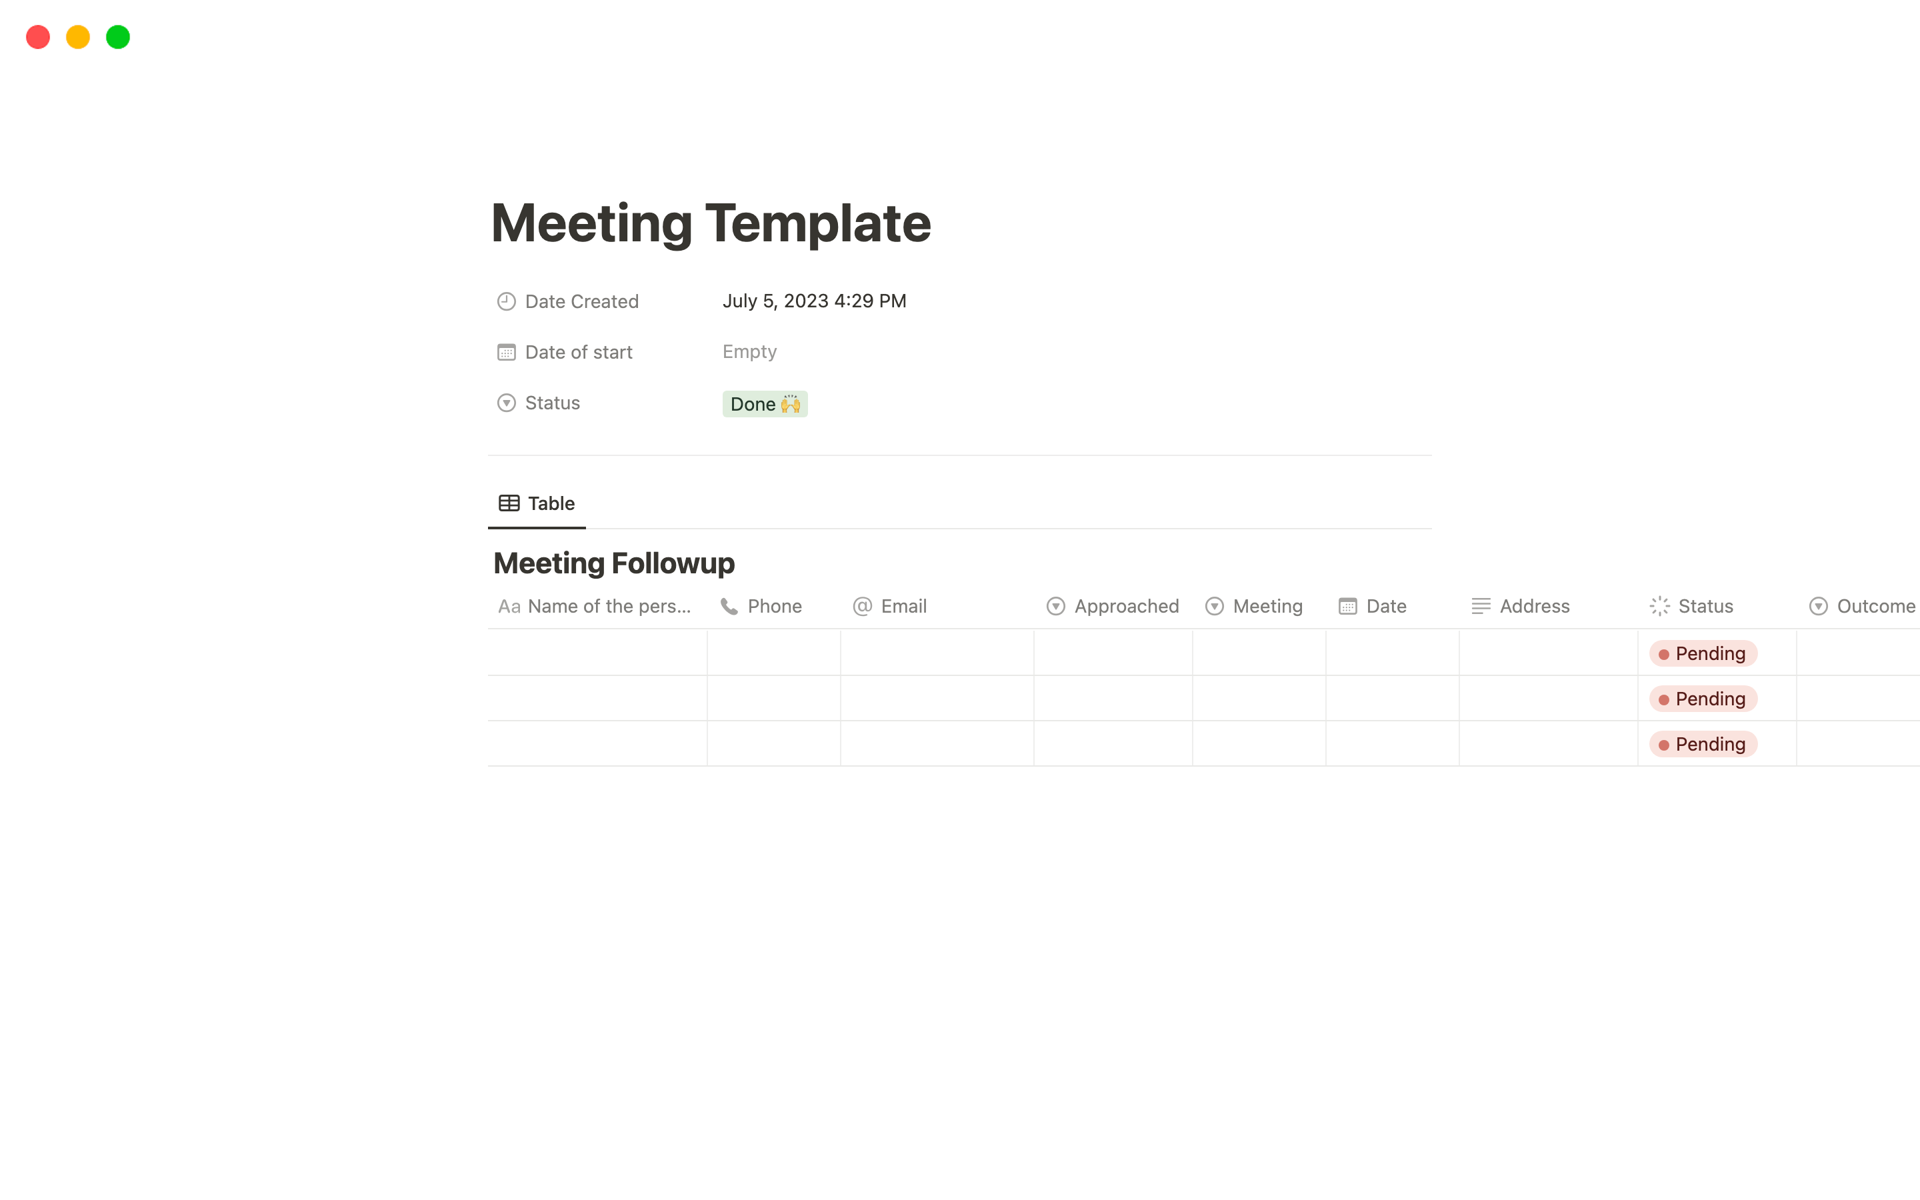 En förhandsgranskning av mallen för Meeting Tracker